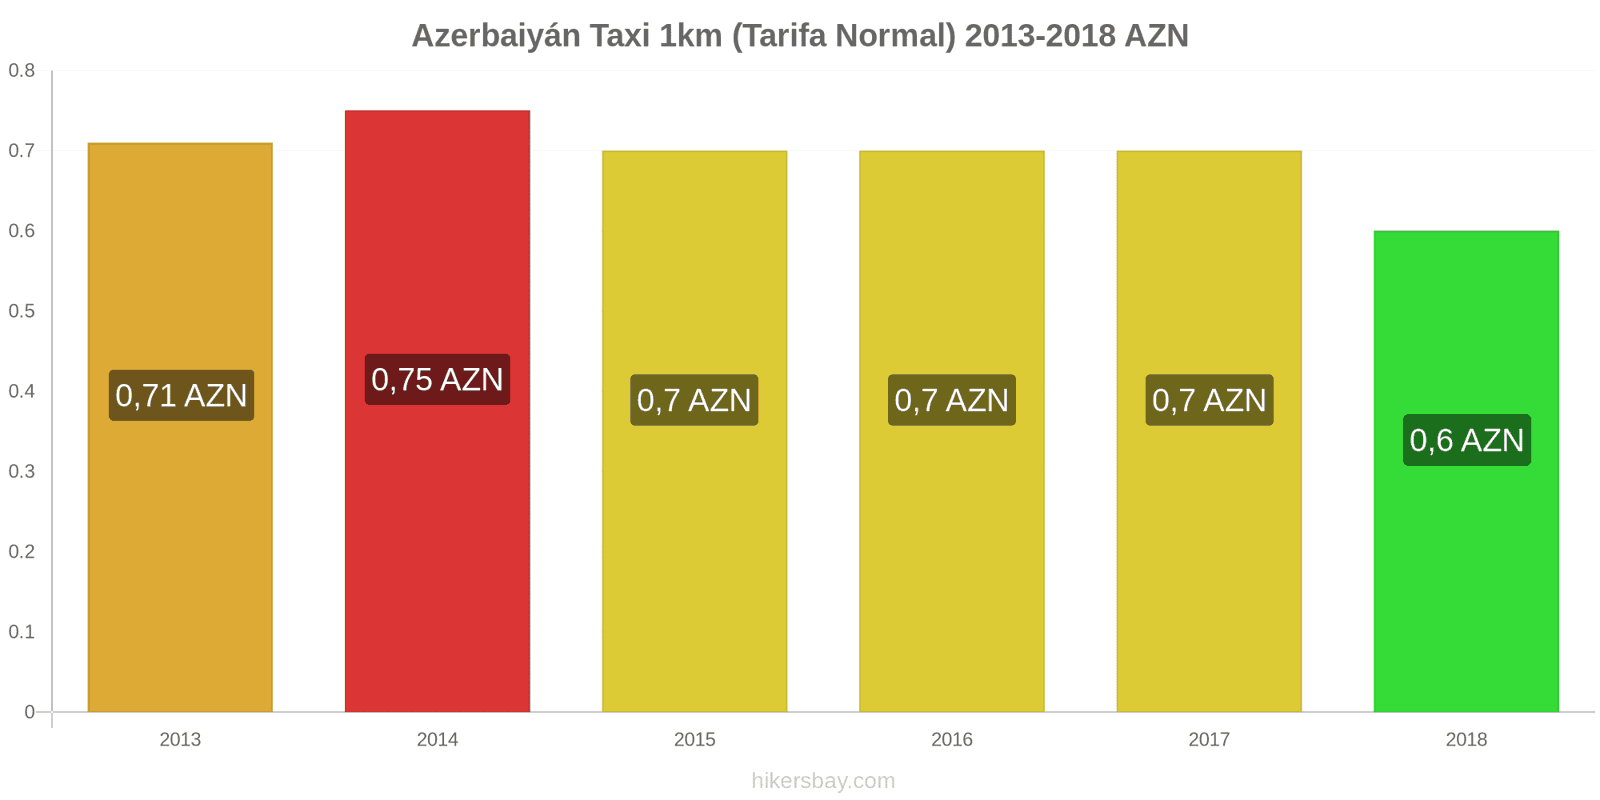 Azerbaiyán cambios de precios Taxi 1km (tarifa normal) hikersbay.com